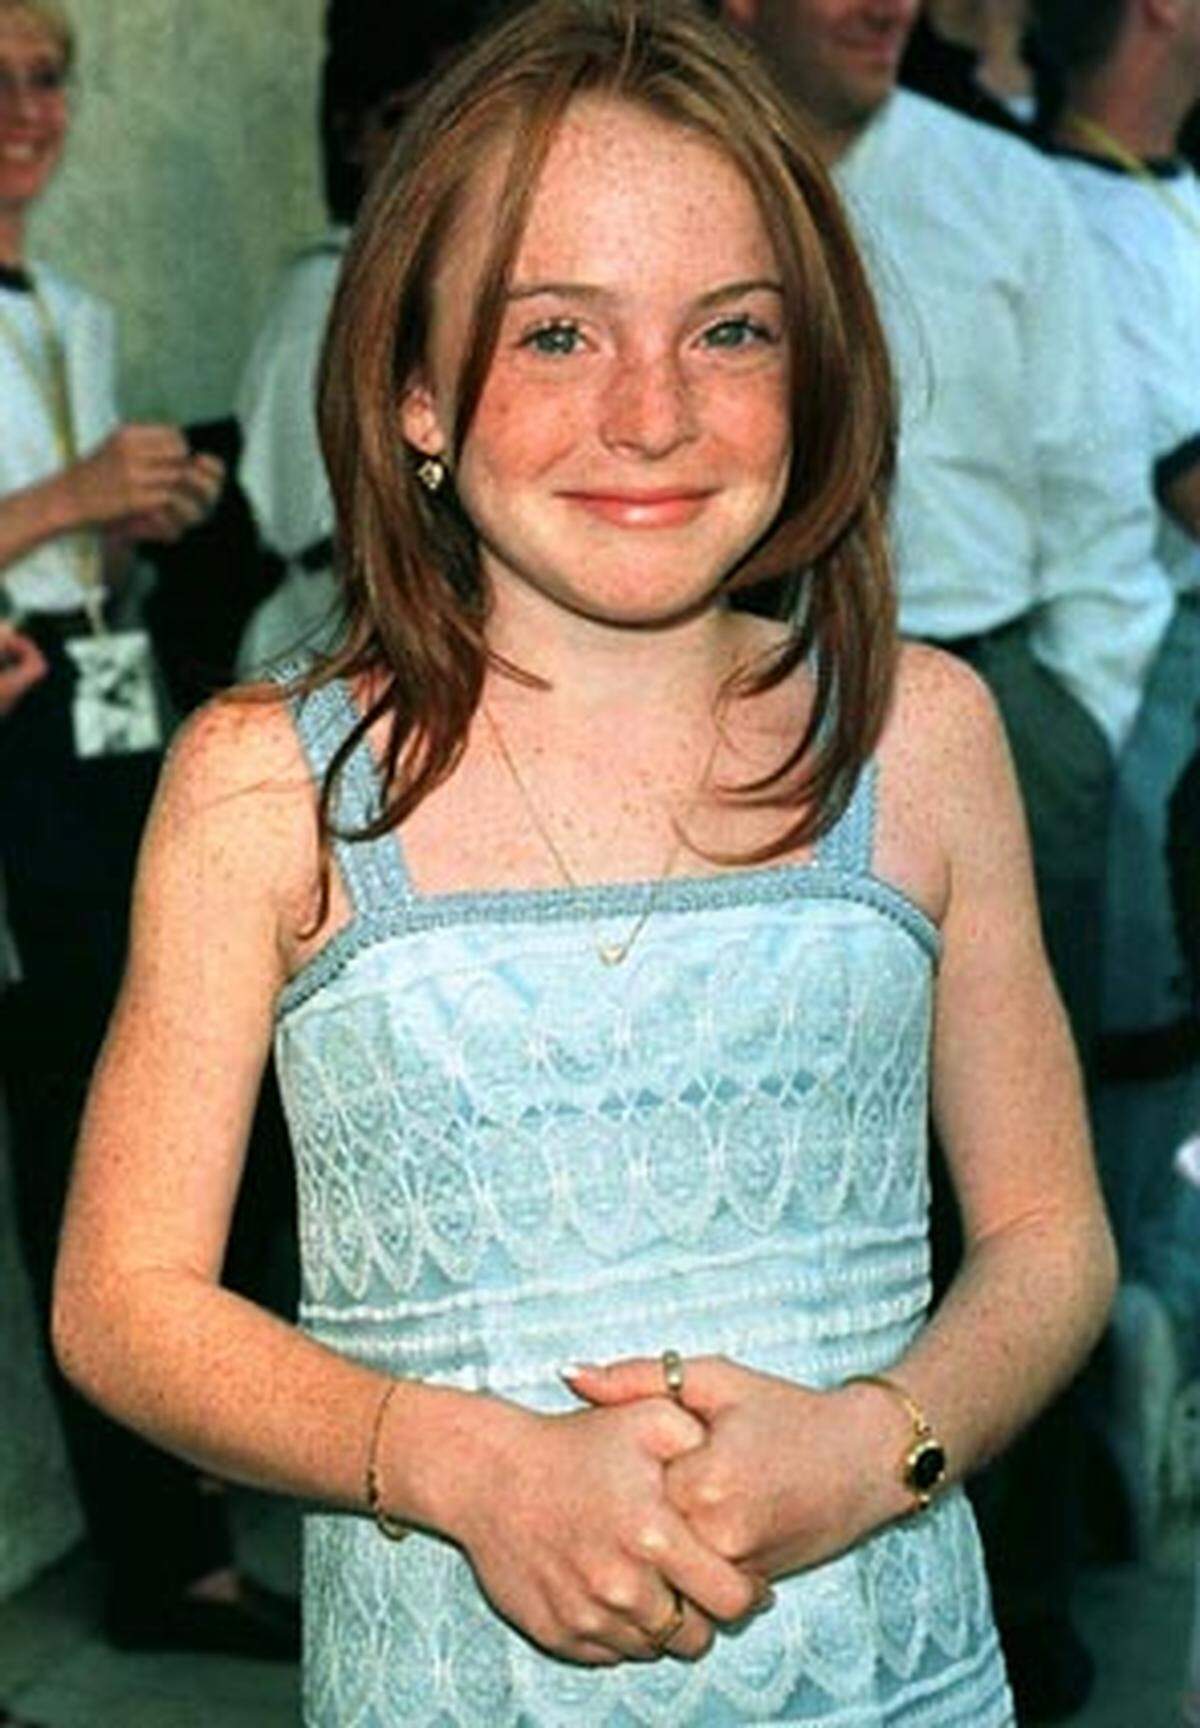 Als niedliches Mädchen in der Komödie "Ein Zwilling kommt selten allein" macht Lohan 1998 als 12-Jährige erstmals auf sich aufmerksam.